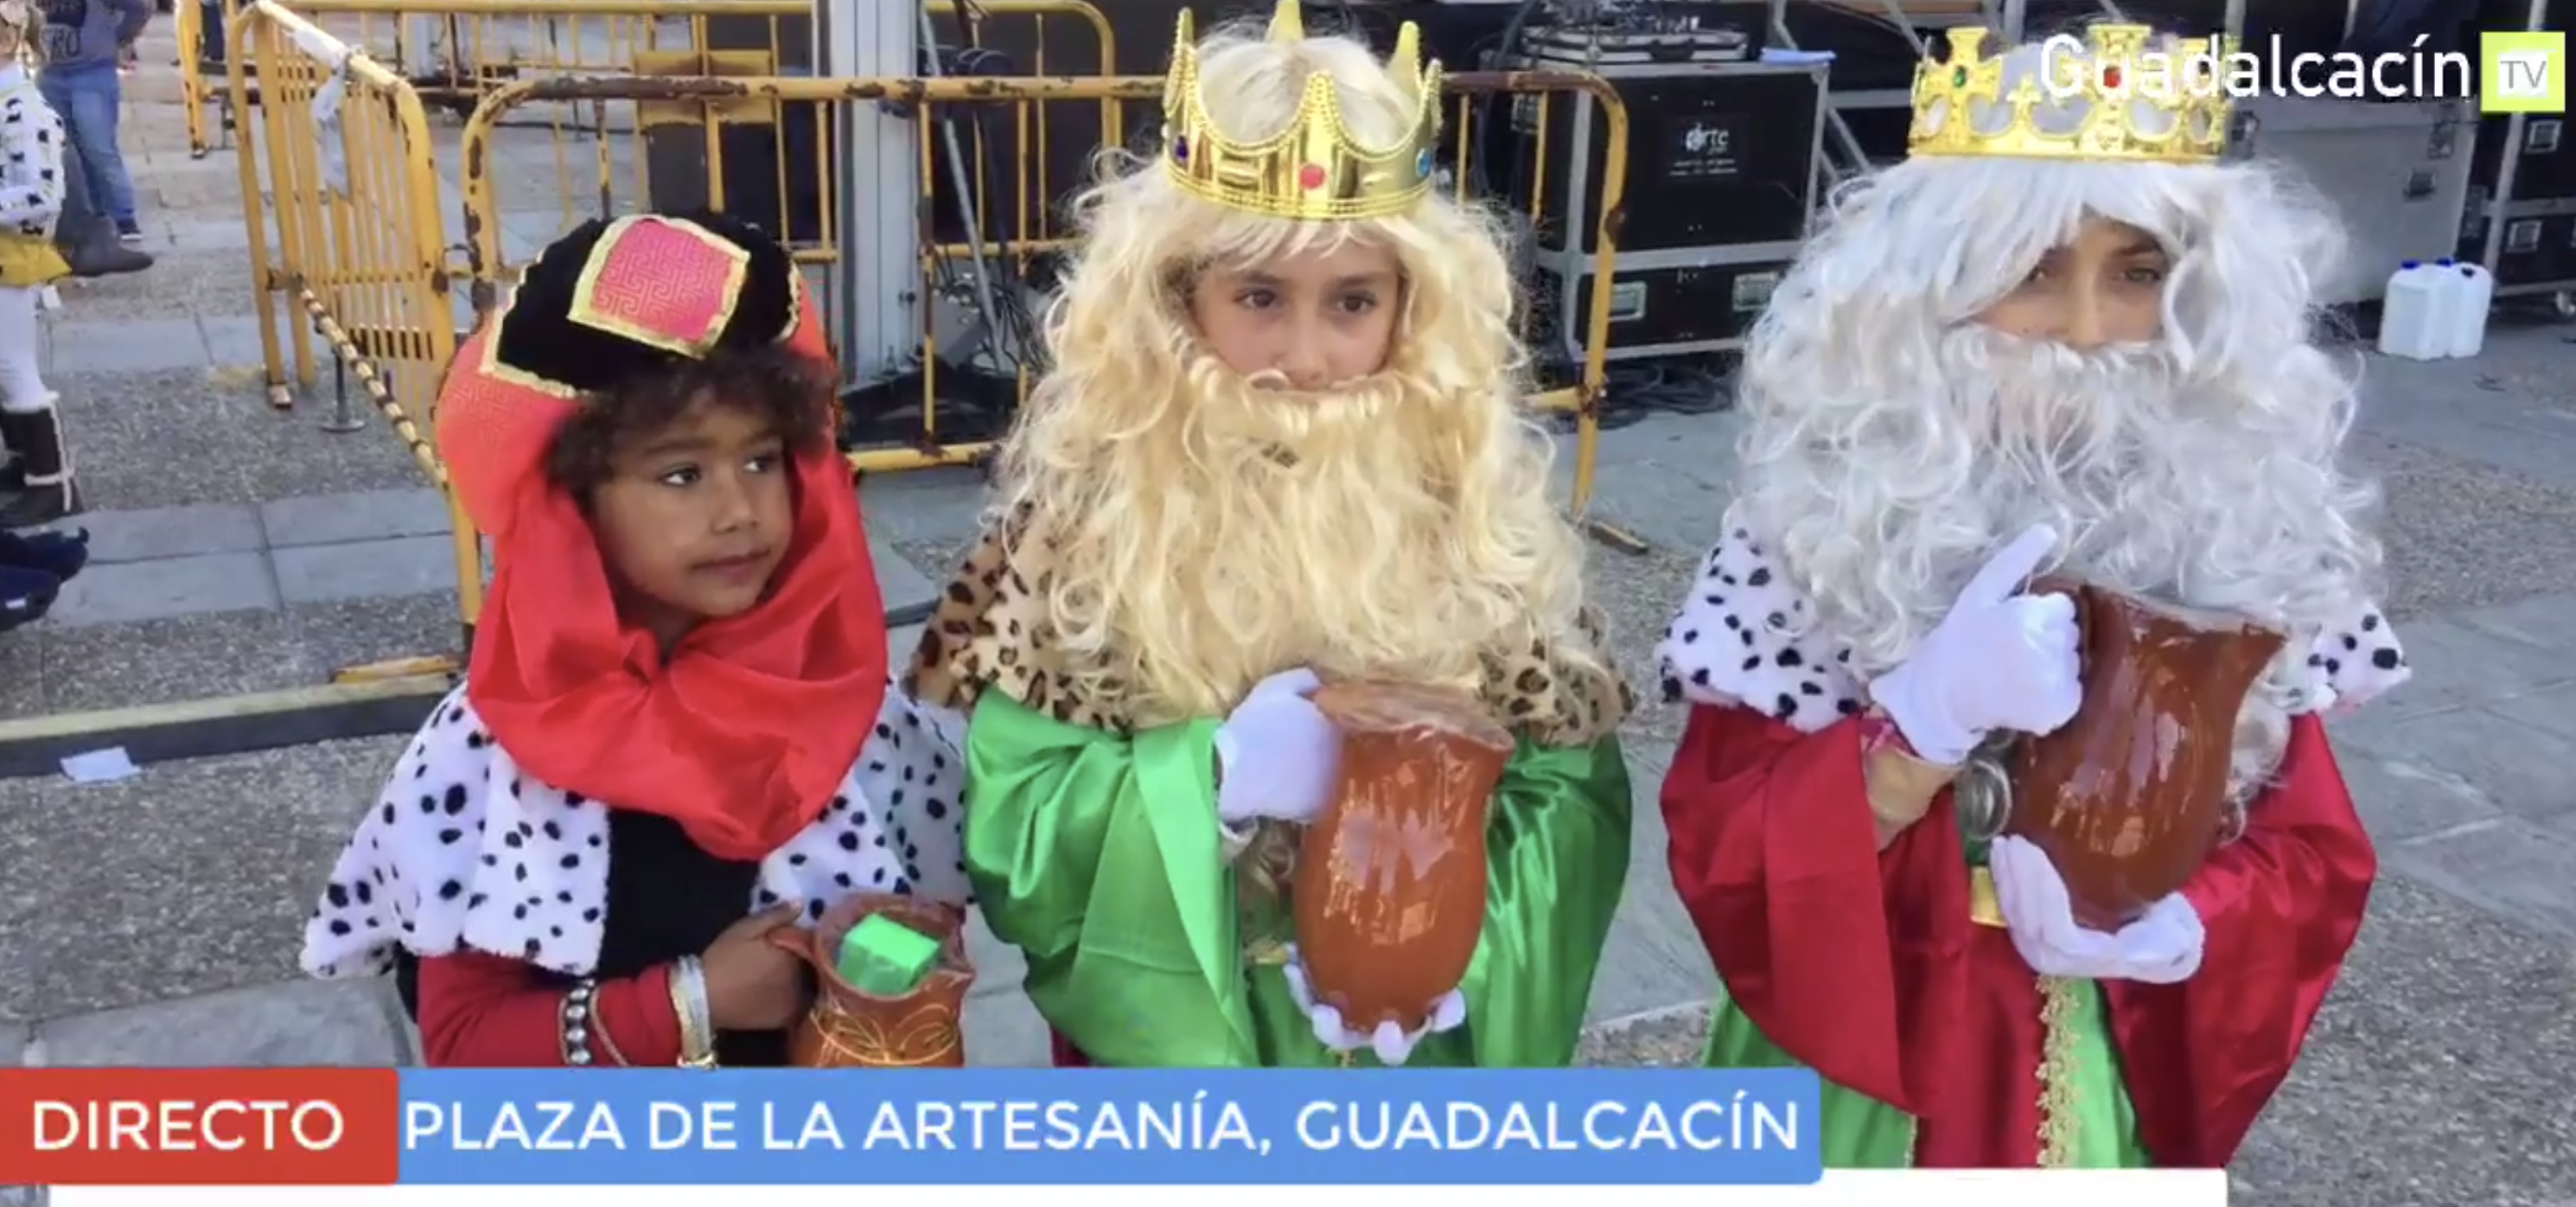 REYES MAGOS 2021 | Guadalcacín sustituye la Cabalgata por la visita de los Reyes  Magos a las casas de los niños mediante inscripción previa – Guadalcacín TV